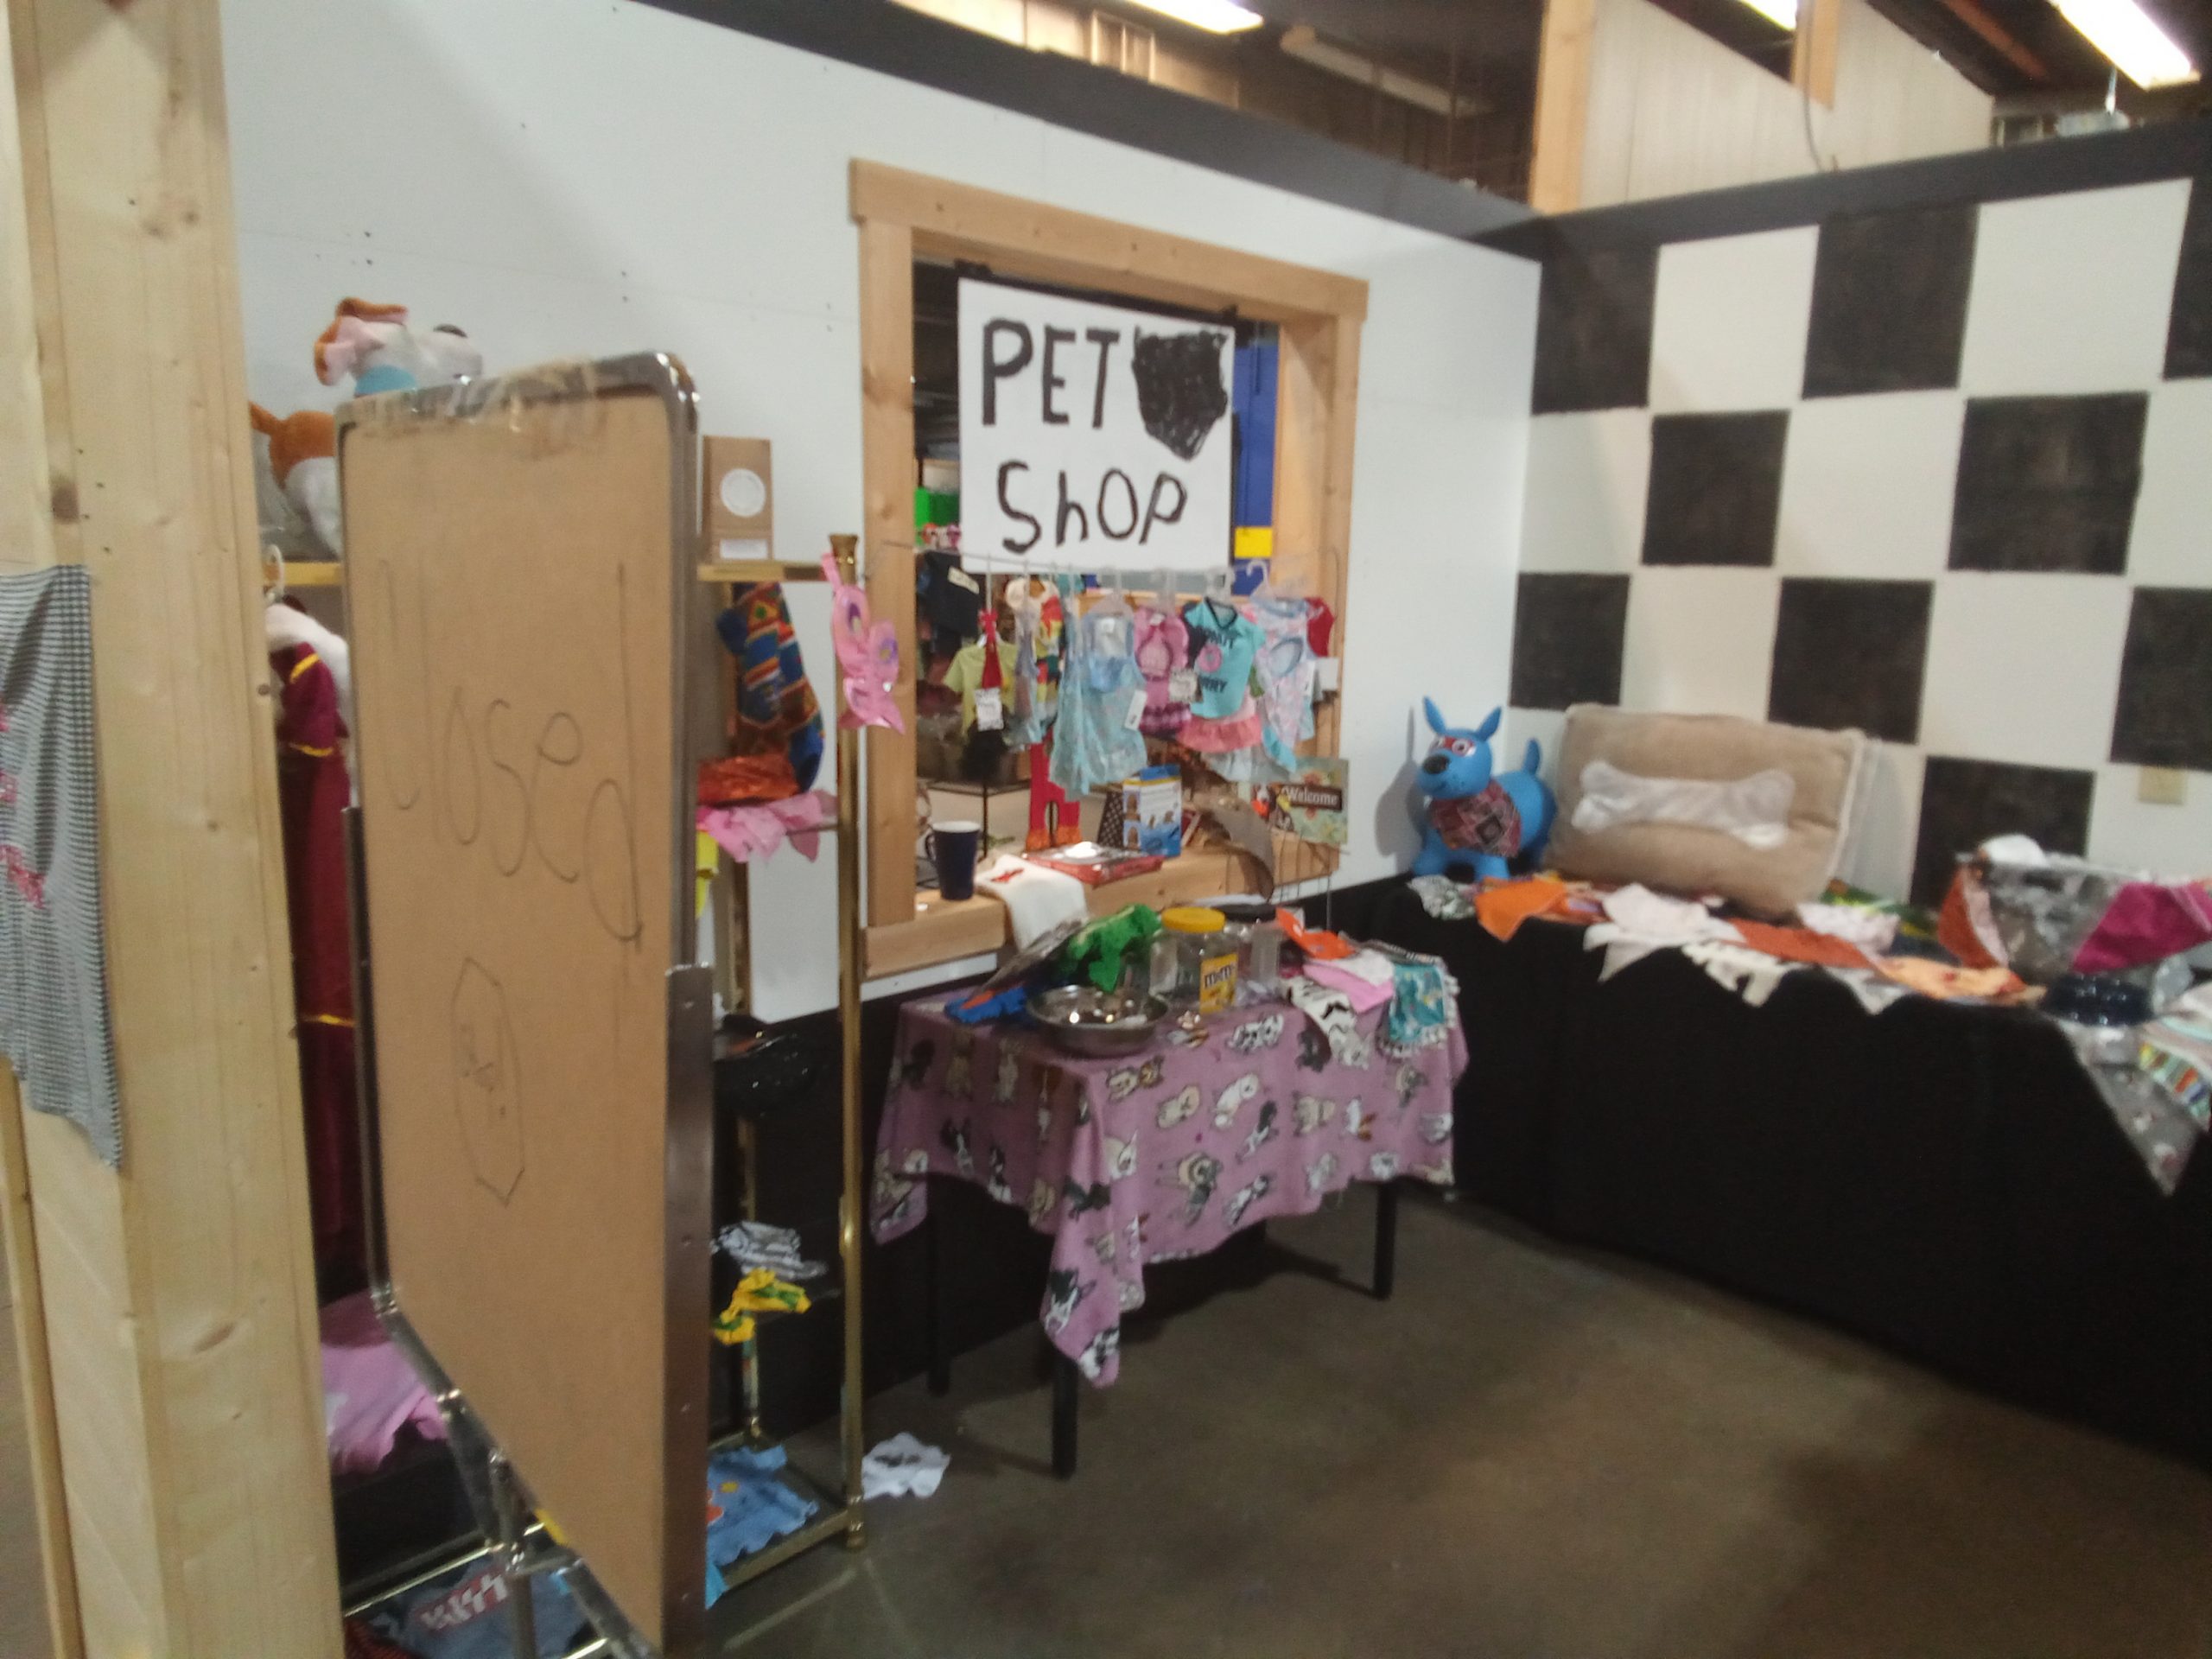 The Pet Shop – P87